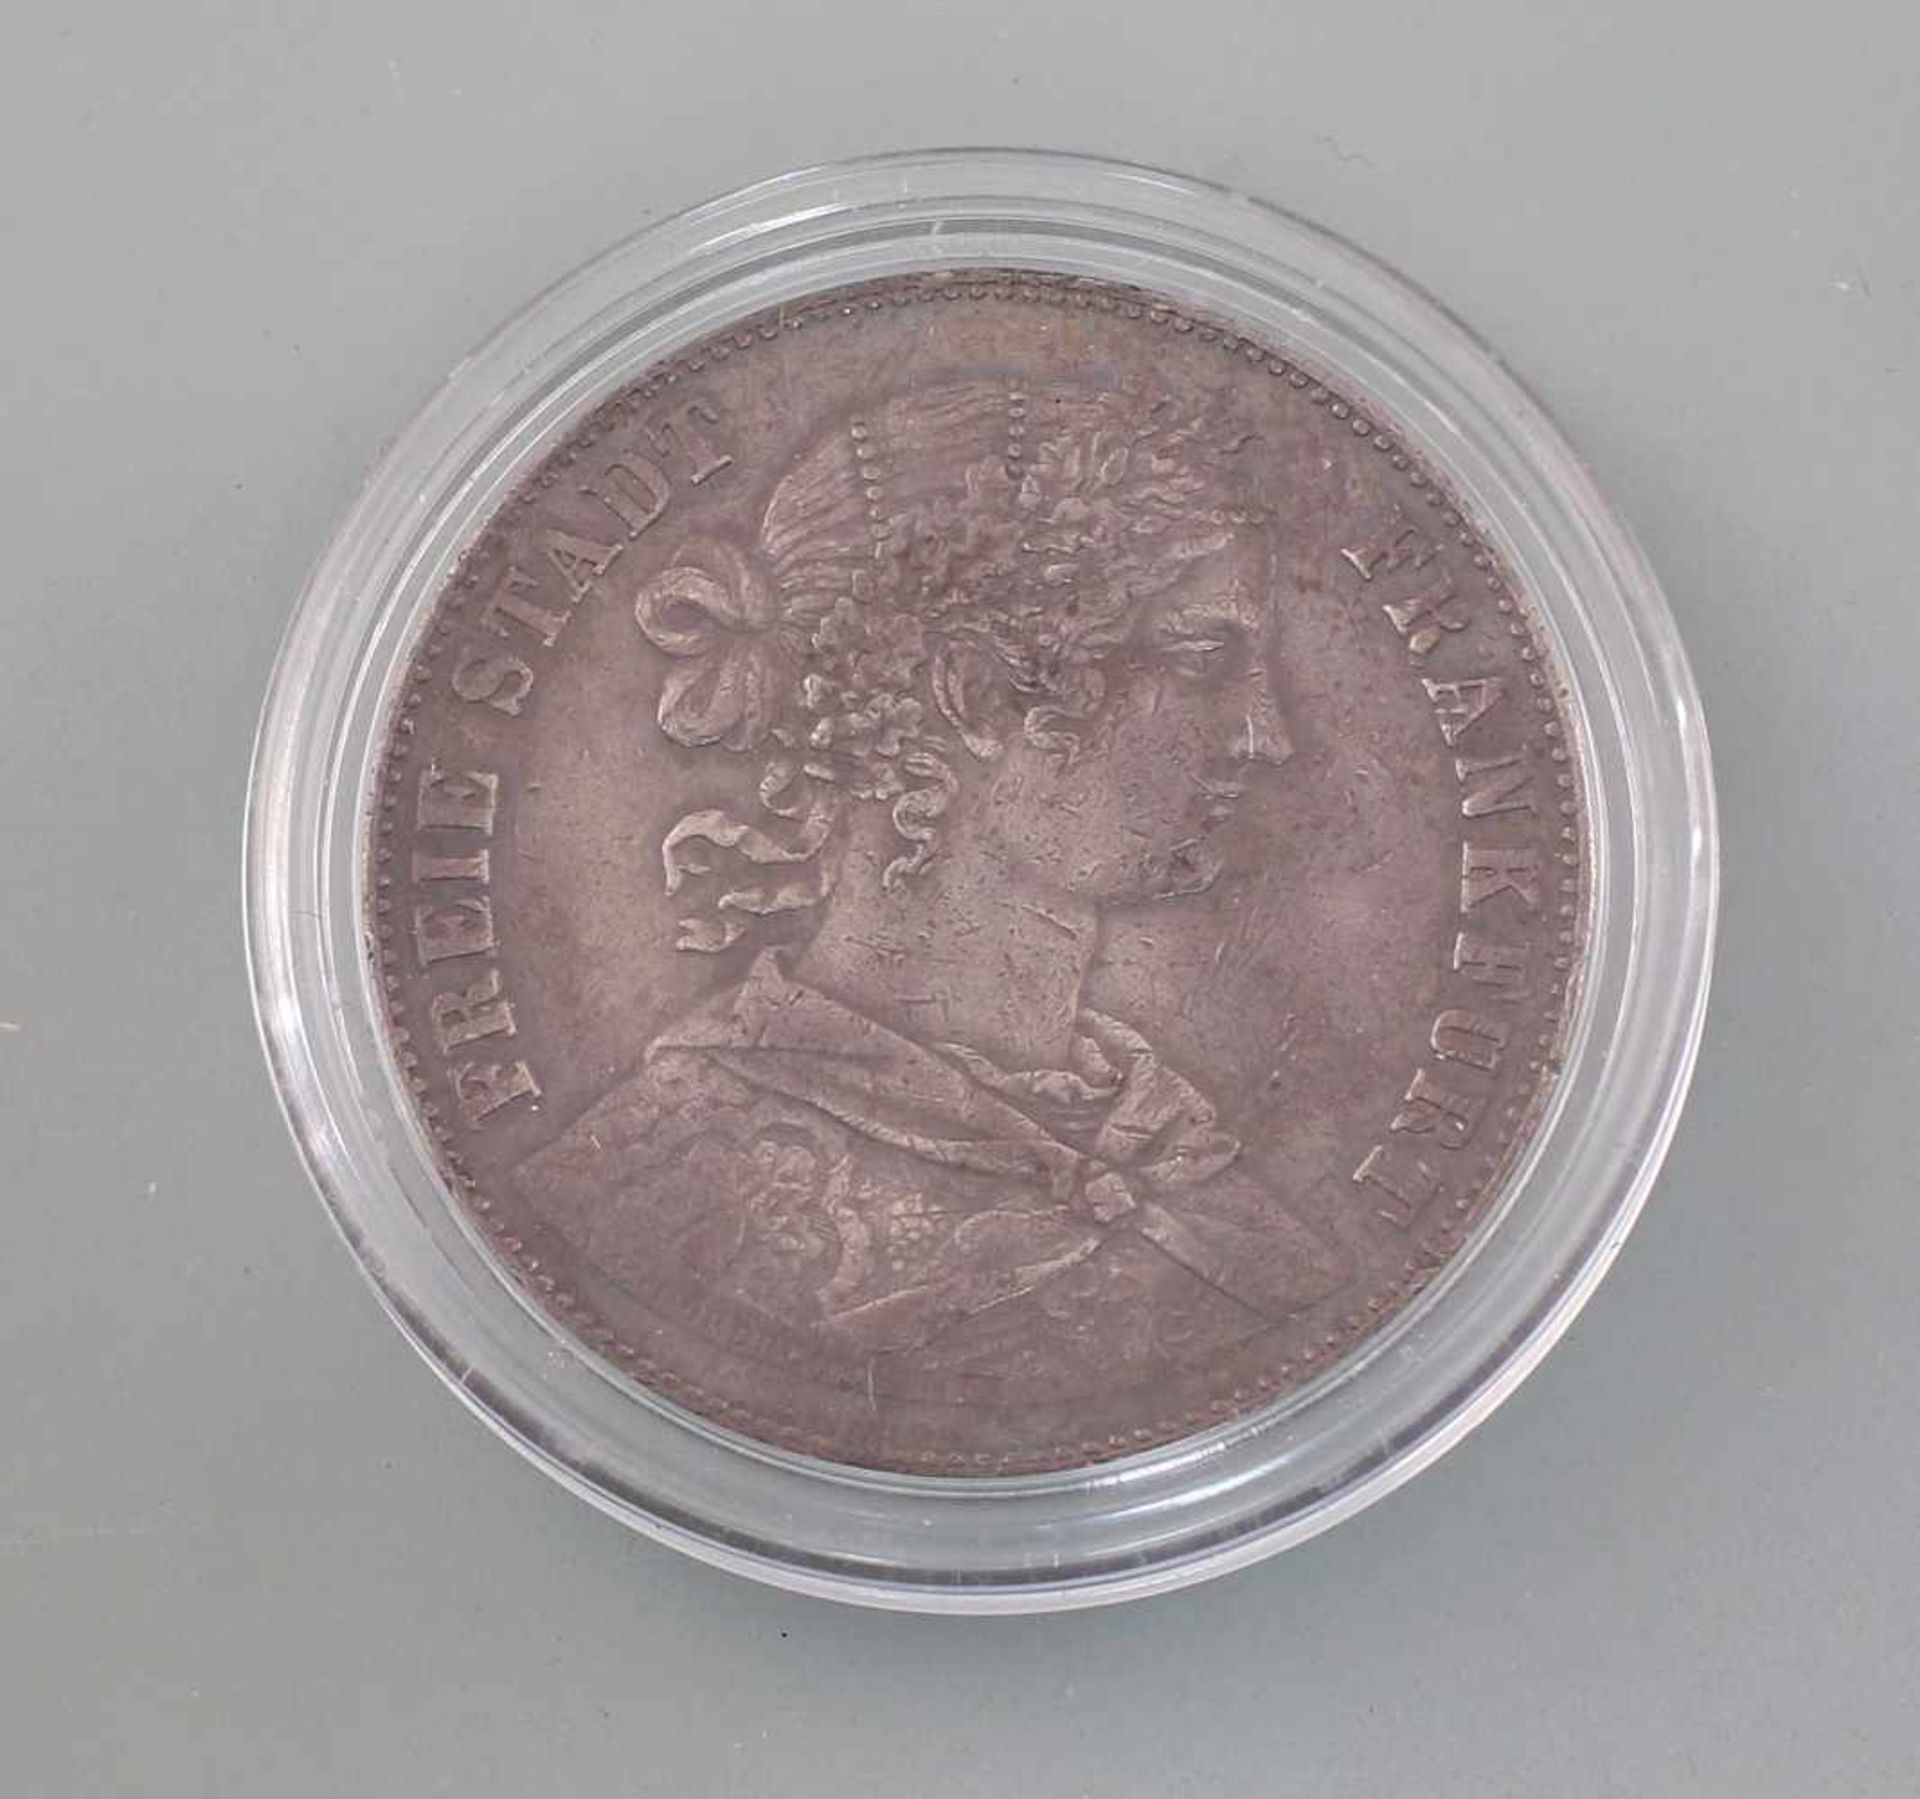 Silber-Münze Vereinsthaler Freie Stadt Frankfurt 1860900er Silber, 18,42 g, D 33 mm, Ein